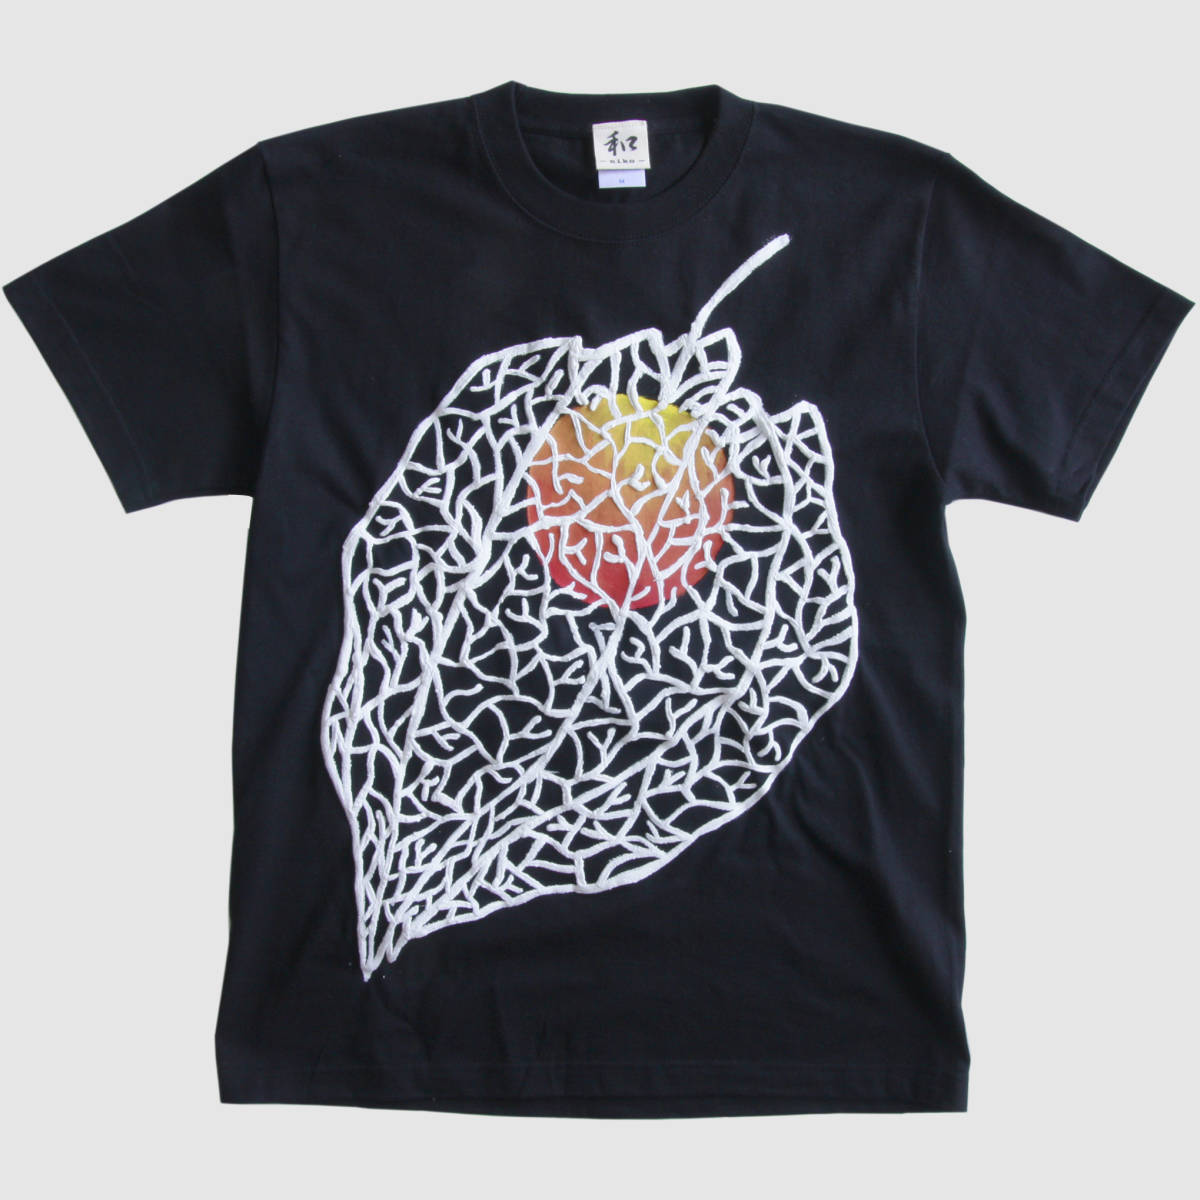 T-shirt Homme taille XXL noir motif Hozuki T-shirt motif Physalis tridimensionnel dessiné à la main T-shirt Fête des Pères Plant Art Handmade motif japonais, Taille XL et plus, col rond, à motifs